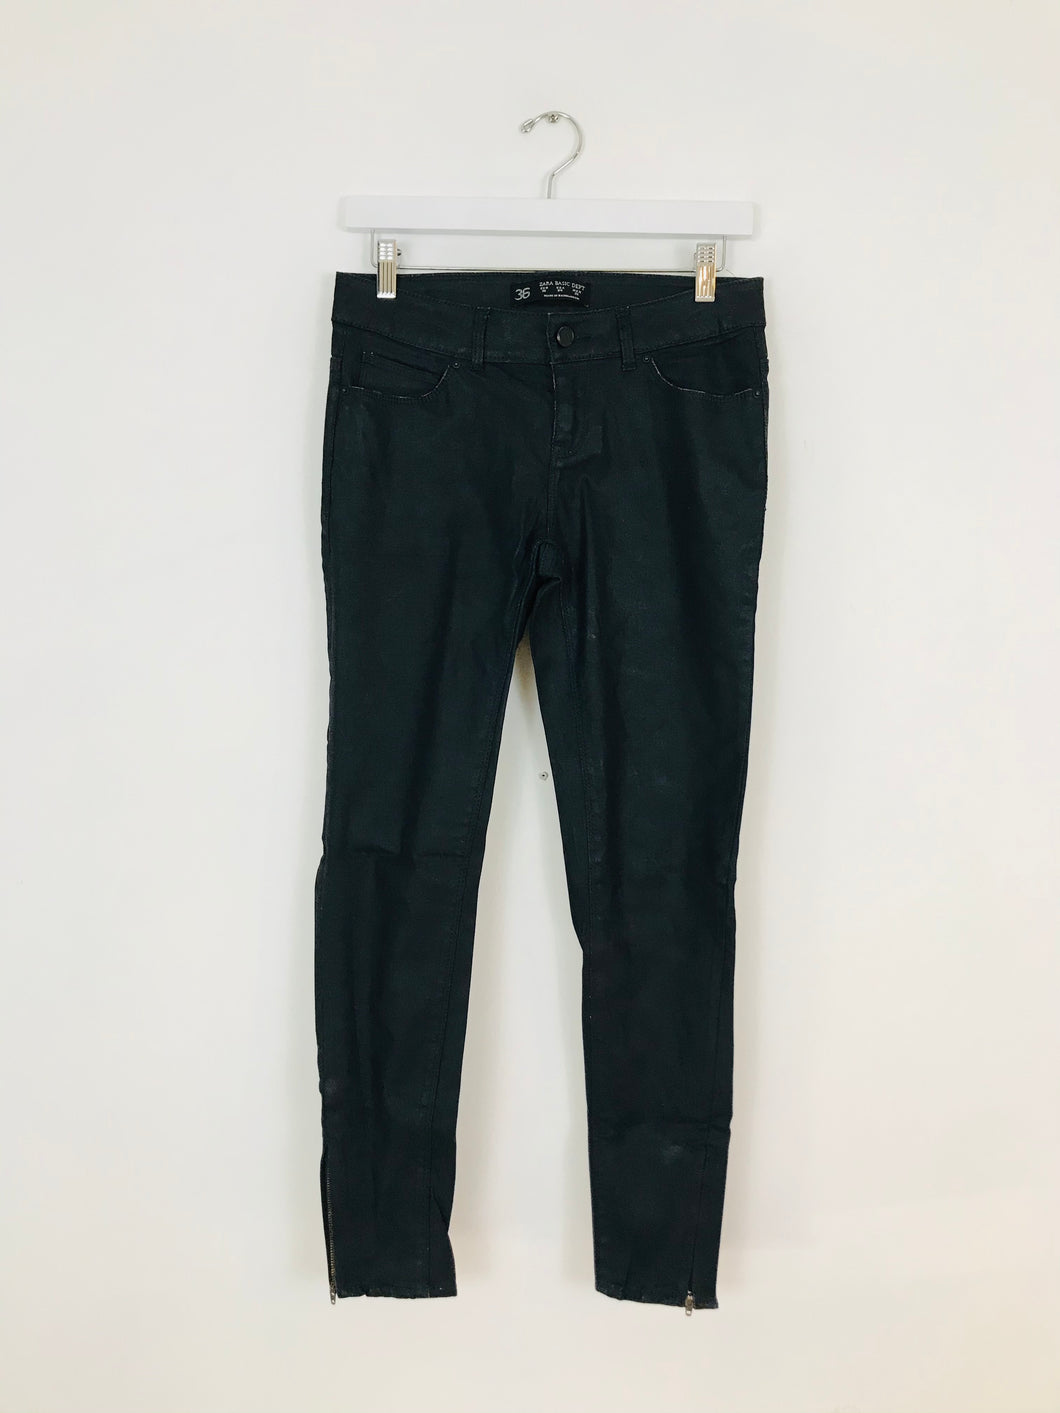 Zara Women’s Leather Look Skinny Jeans | UK8 W29 L27.5 | Black